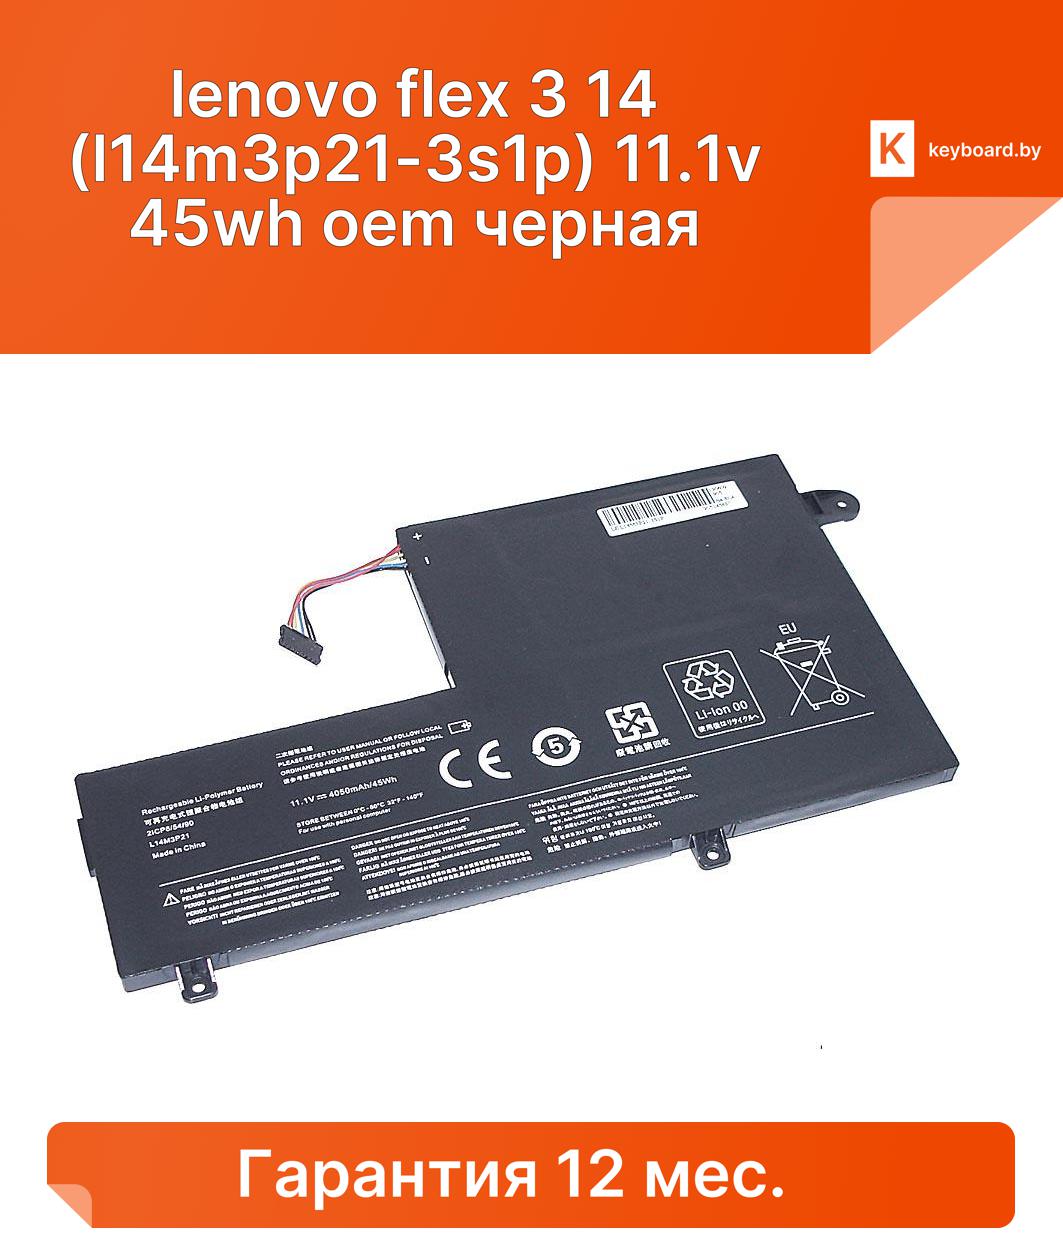 Аккумуляторная батарея для ноутбука lenovo flex 3 14 (l14m3p21-3s1p) 11.1v 45wh oem черная